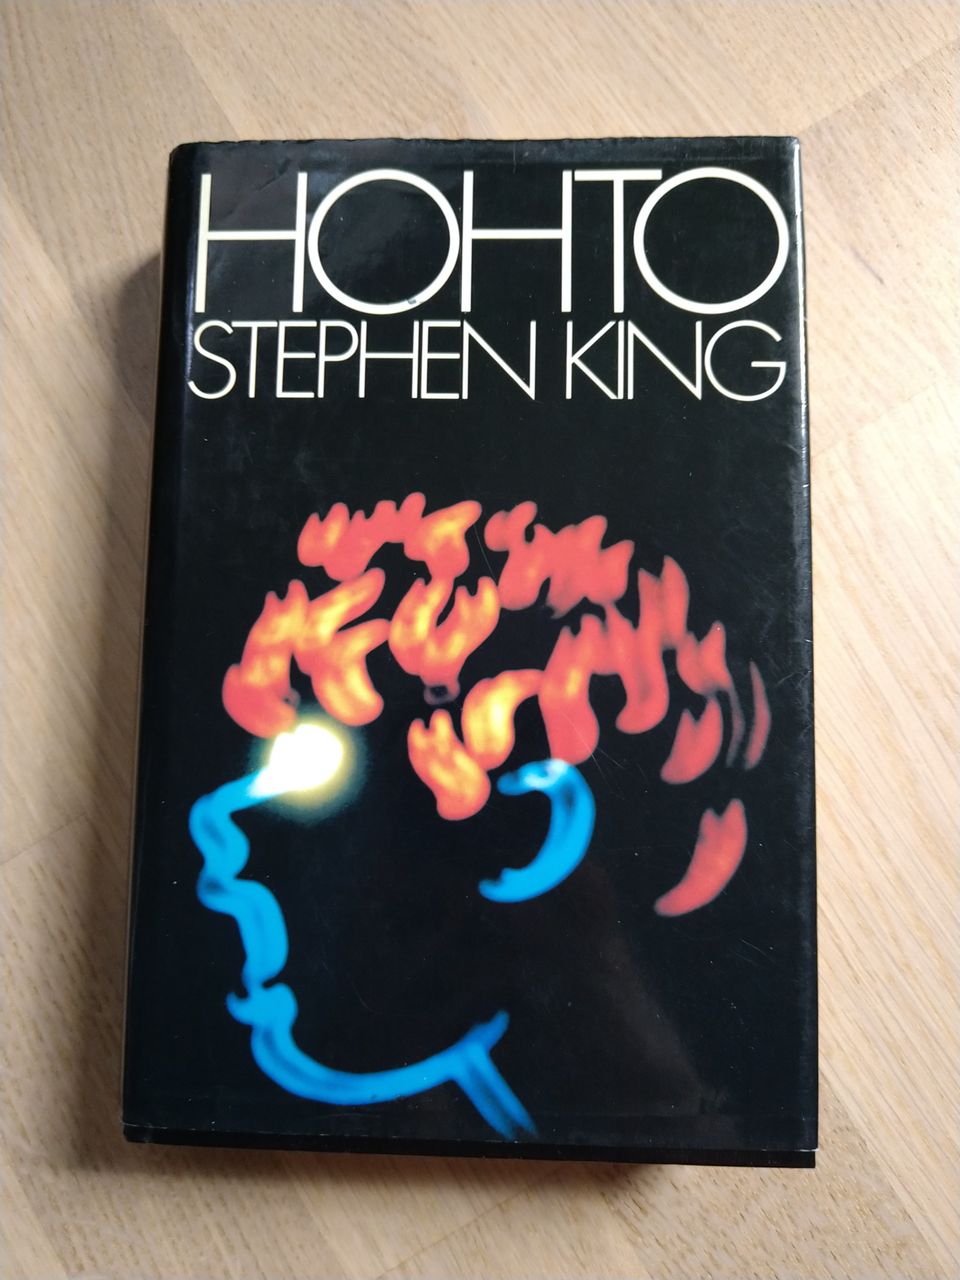 Hohto - Stephen King